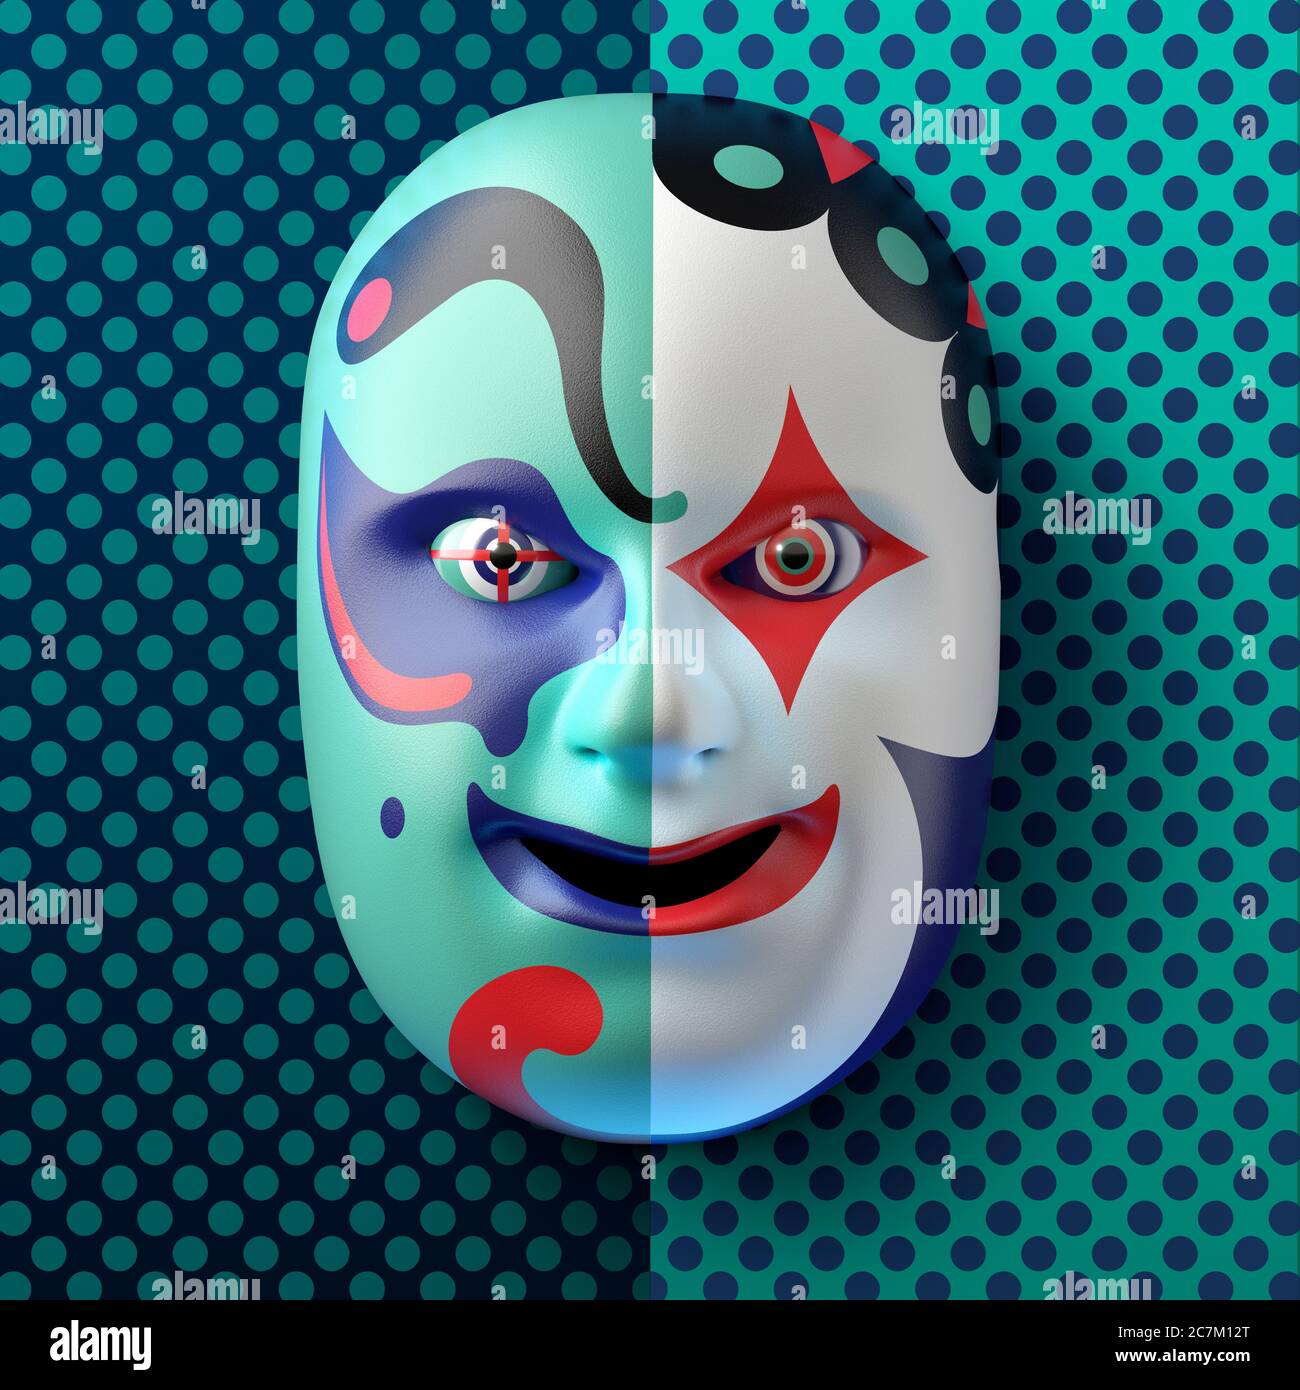 Masque de théâtre asiatique avec ornements colorés sur fond bleu-turquoise en pointillés Banque D'Images